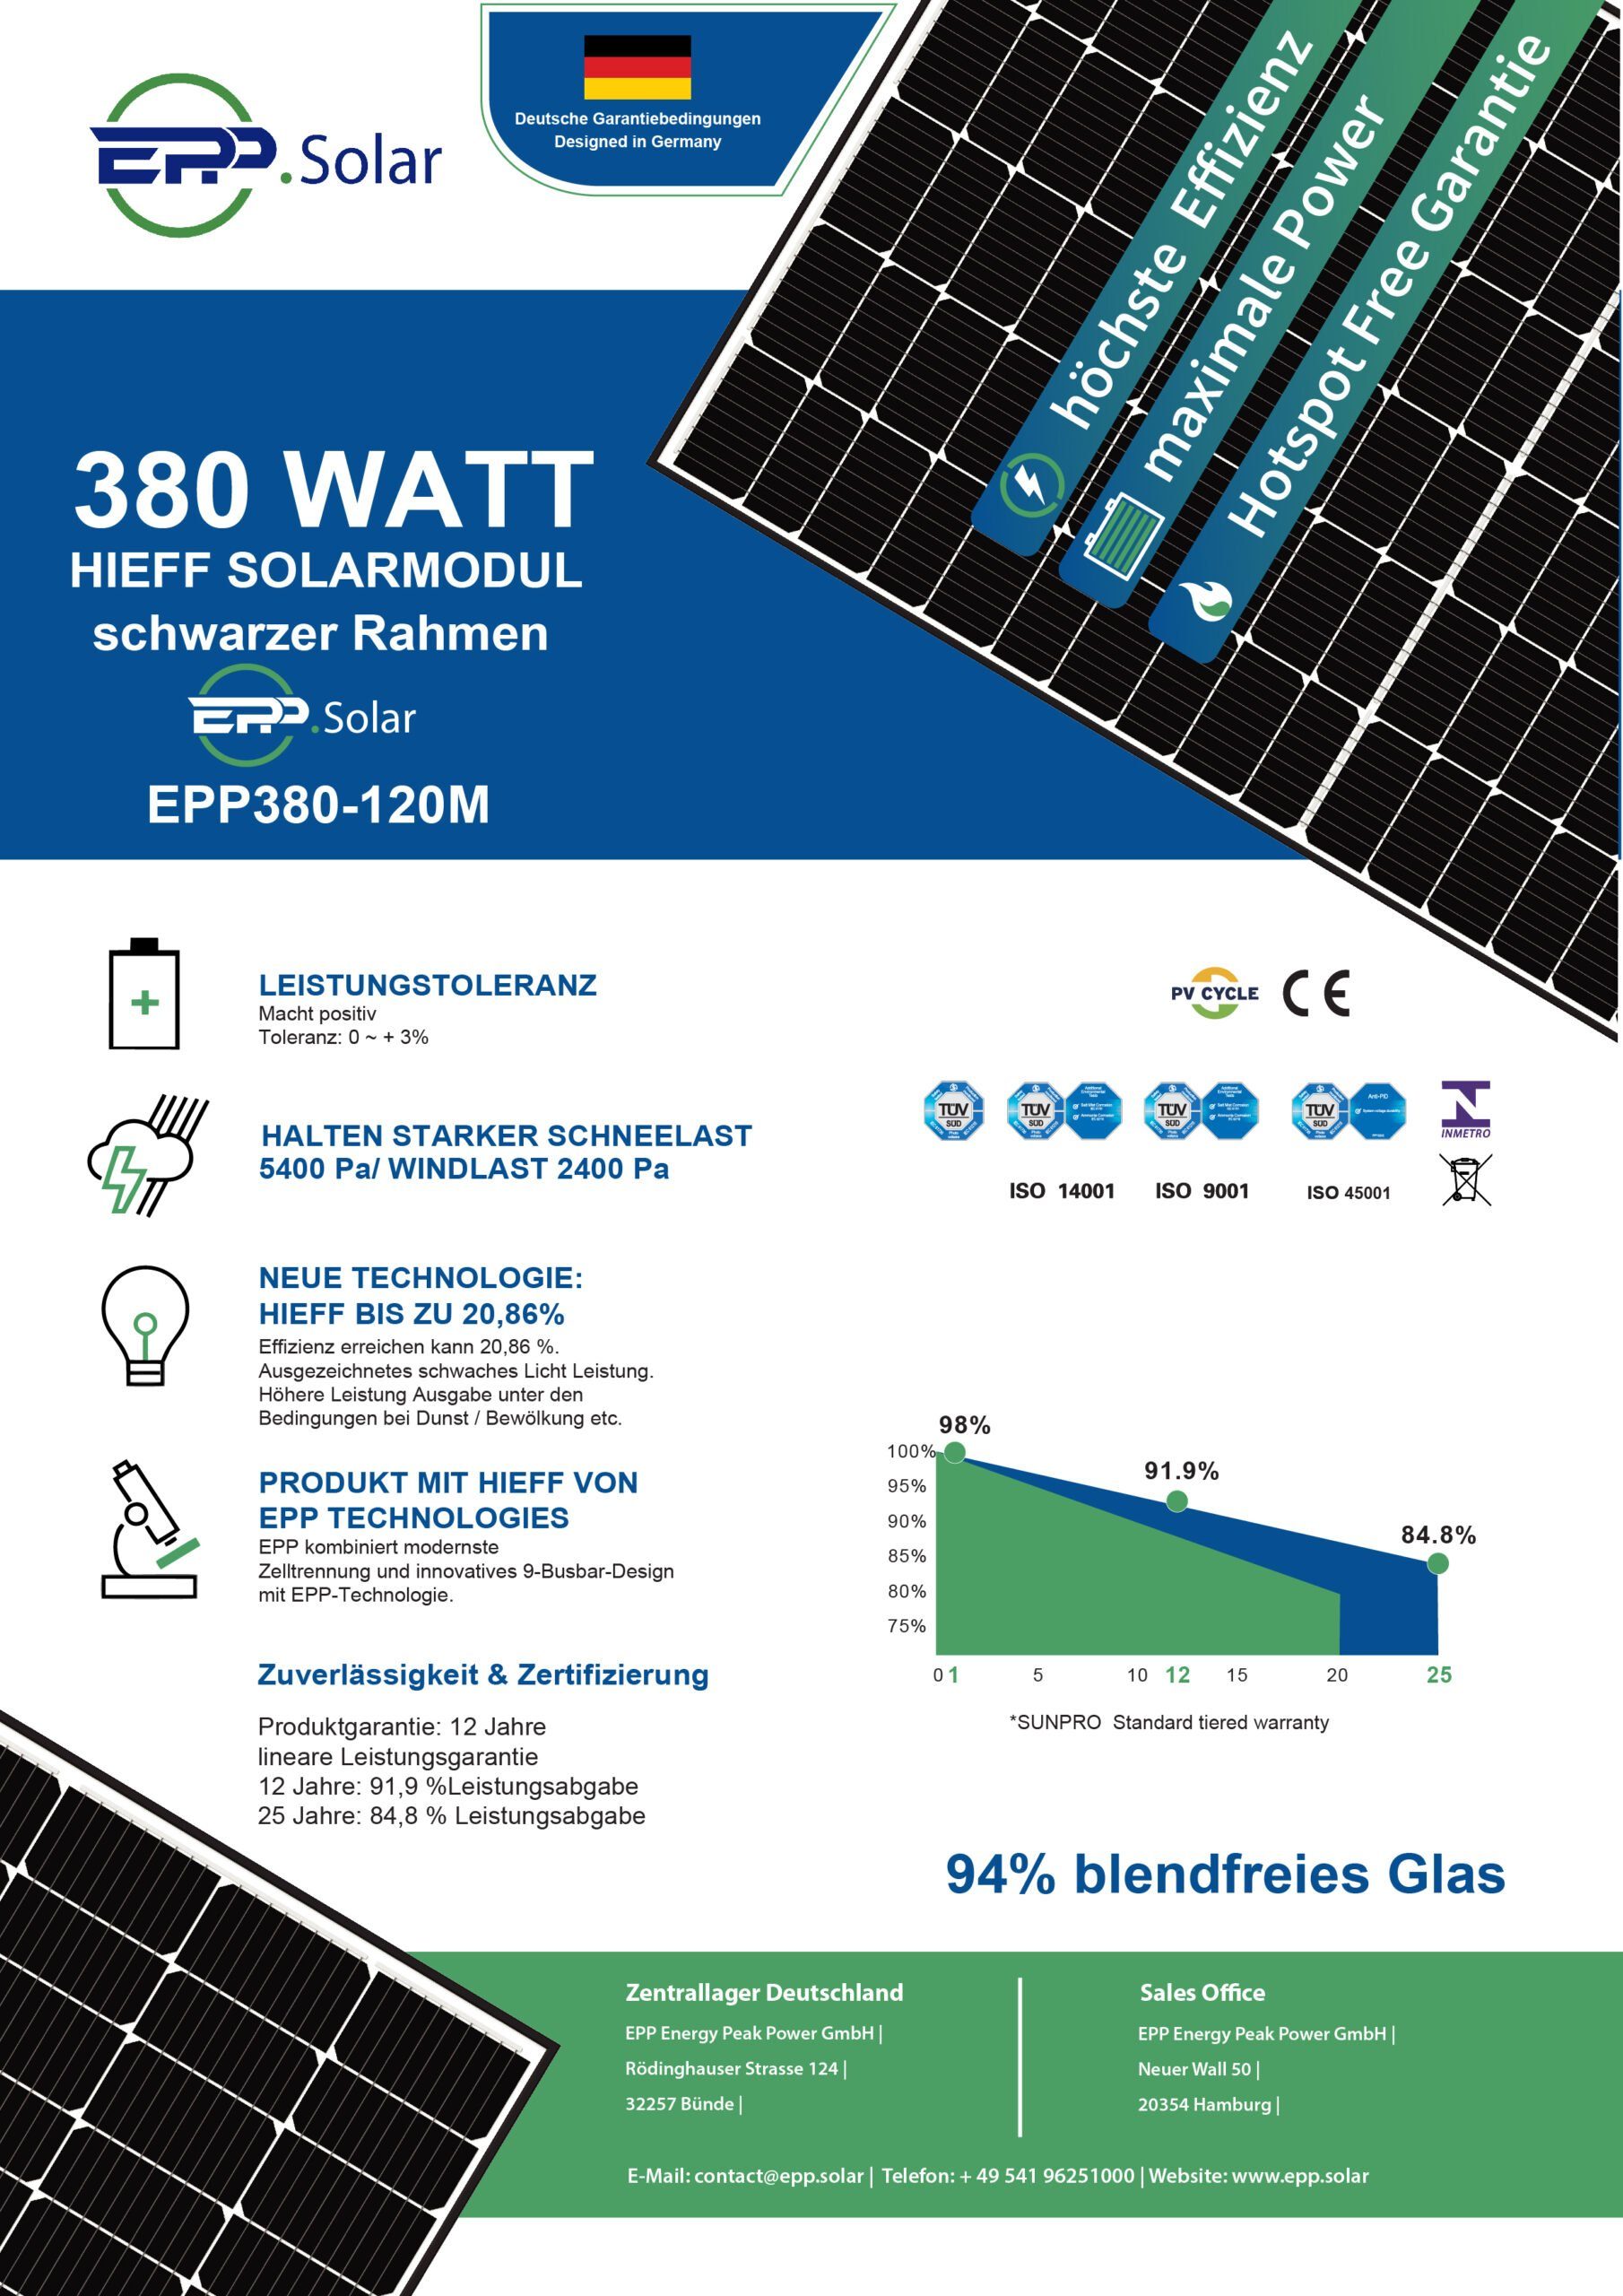 380W Solarmodul Schwarz (Solarpanel) Balkonkraftwerk IP68, Wasserdichtigkeitsklasse Campergold Photovoltaik Solaranlage, Solarmodul